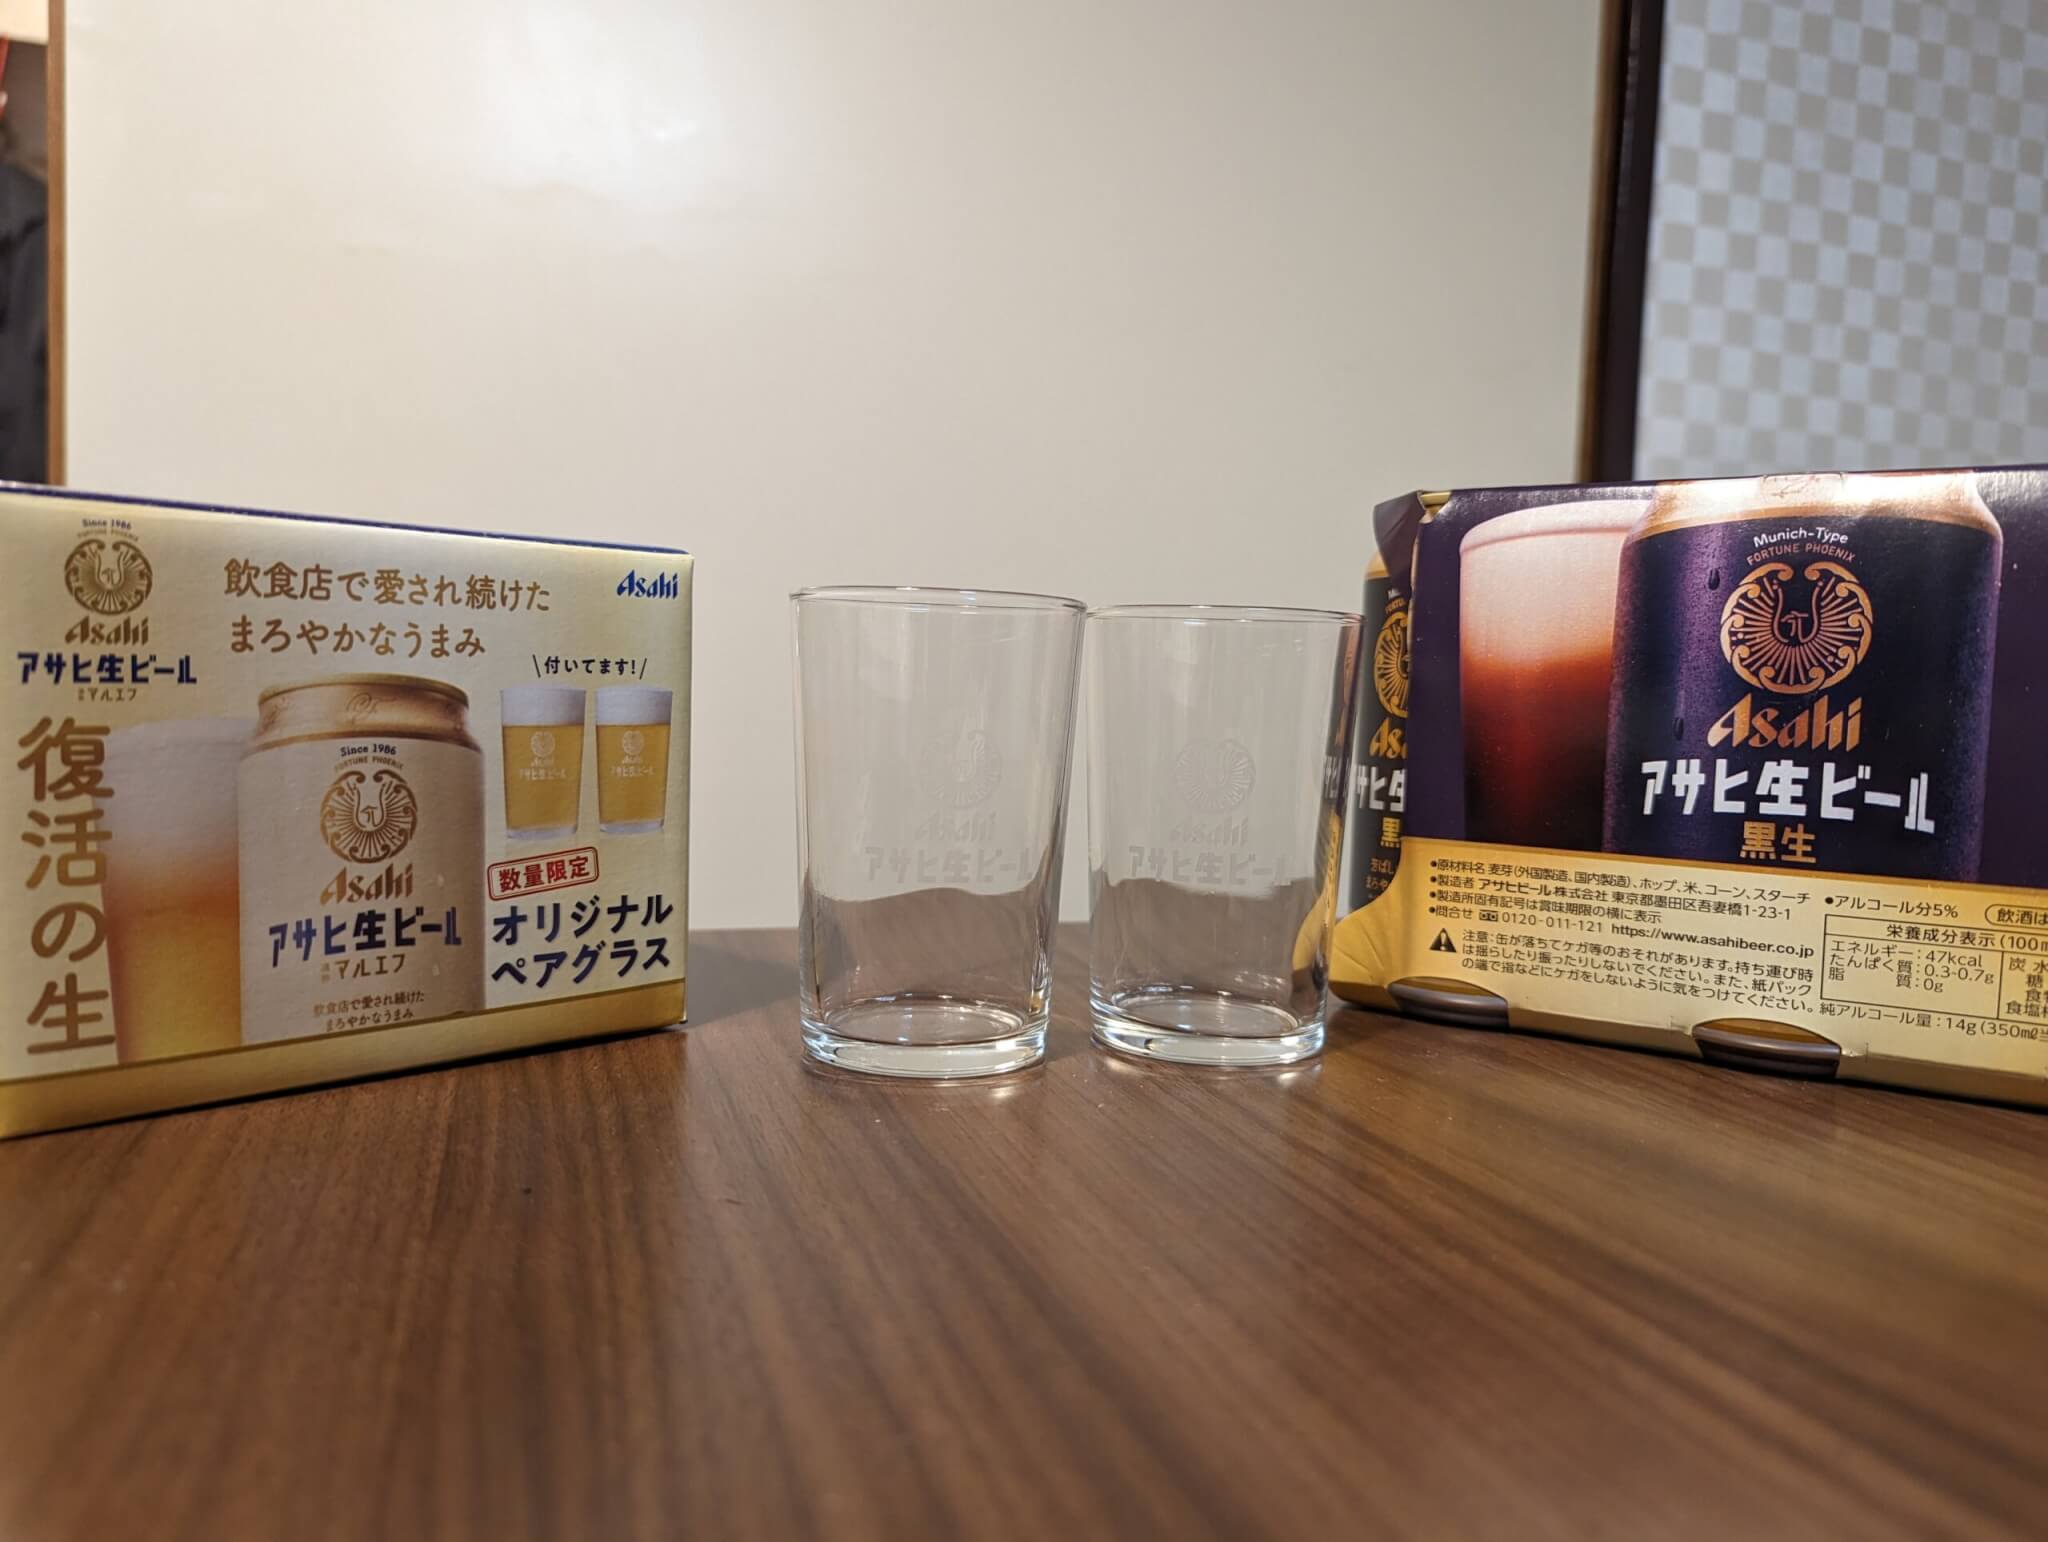 【おまけグラス】アサヒ生ビール黒生(通称マルエフ) オリジナル